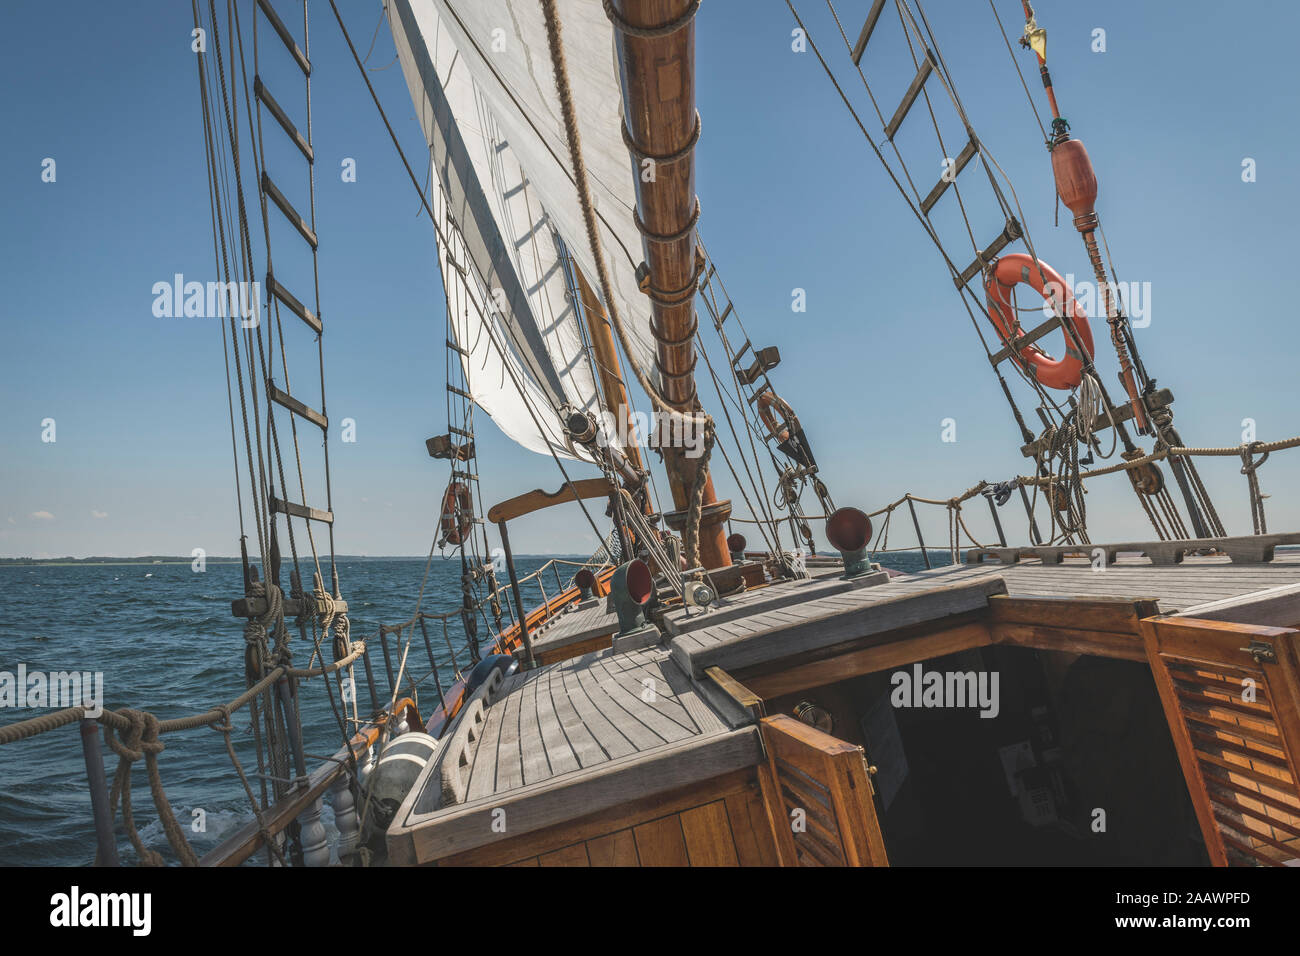 Dinamarca, Mar Báltico, Pastel goleta toldilla visto en jornada pacífica Foto de stock